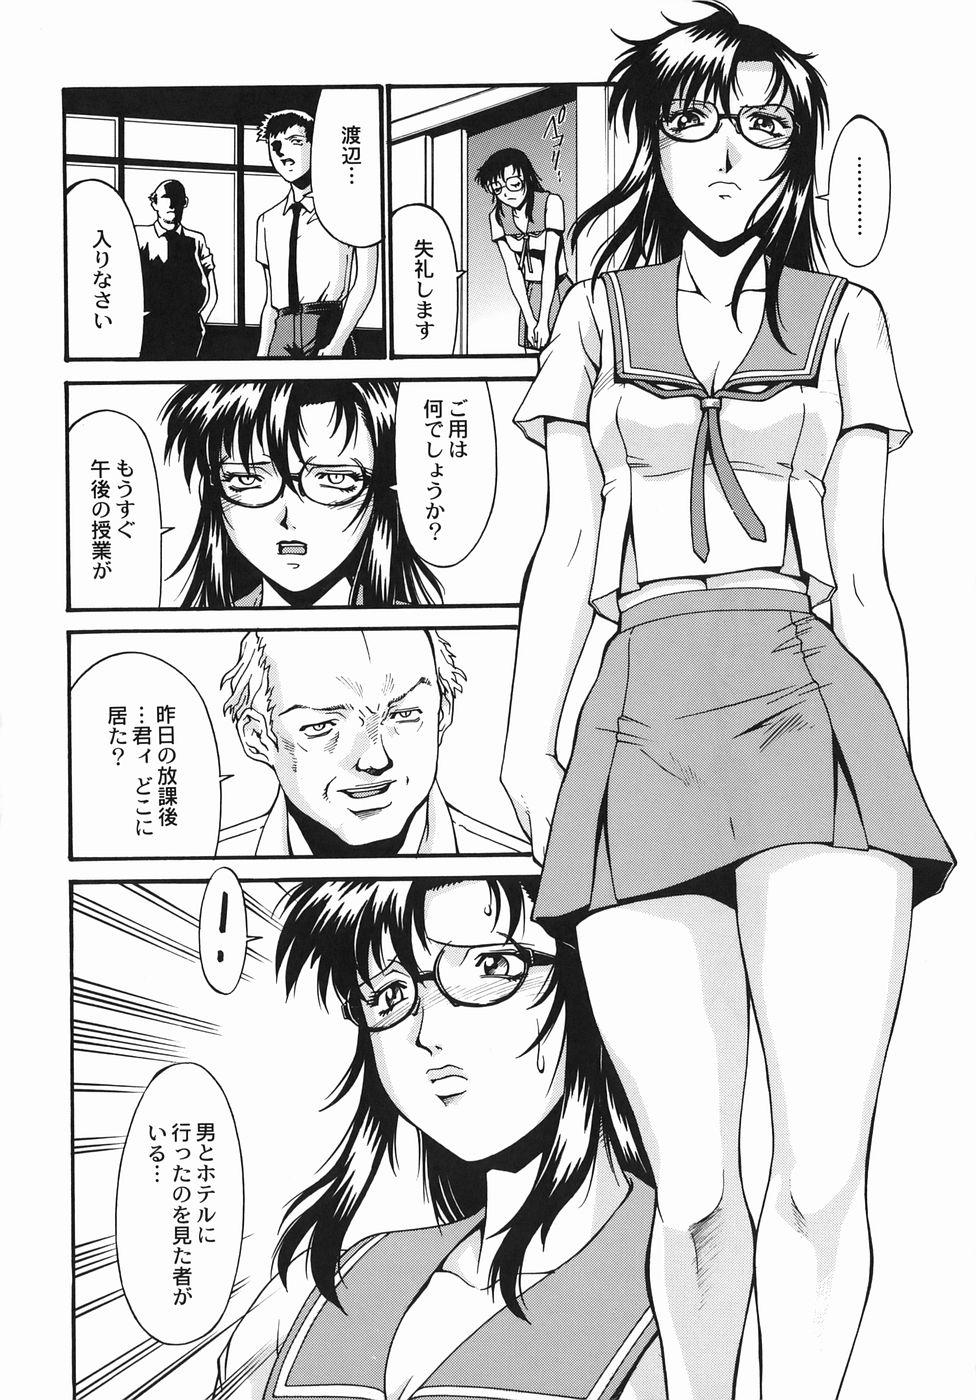 Leaked [DON繁] 女熱 じょねつ - [Don Shigeru] Jyonetsu Facials - Page 7